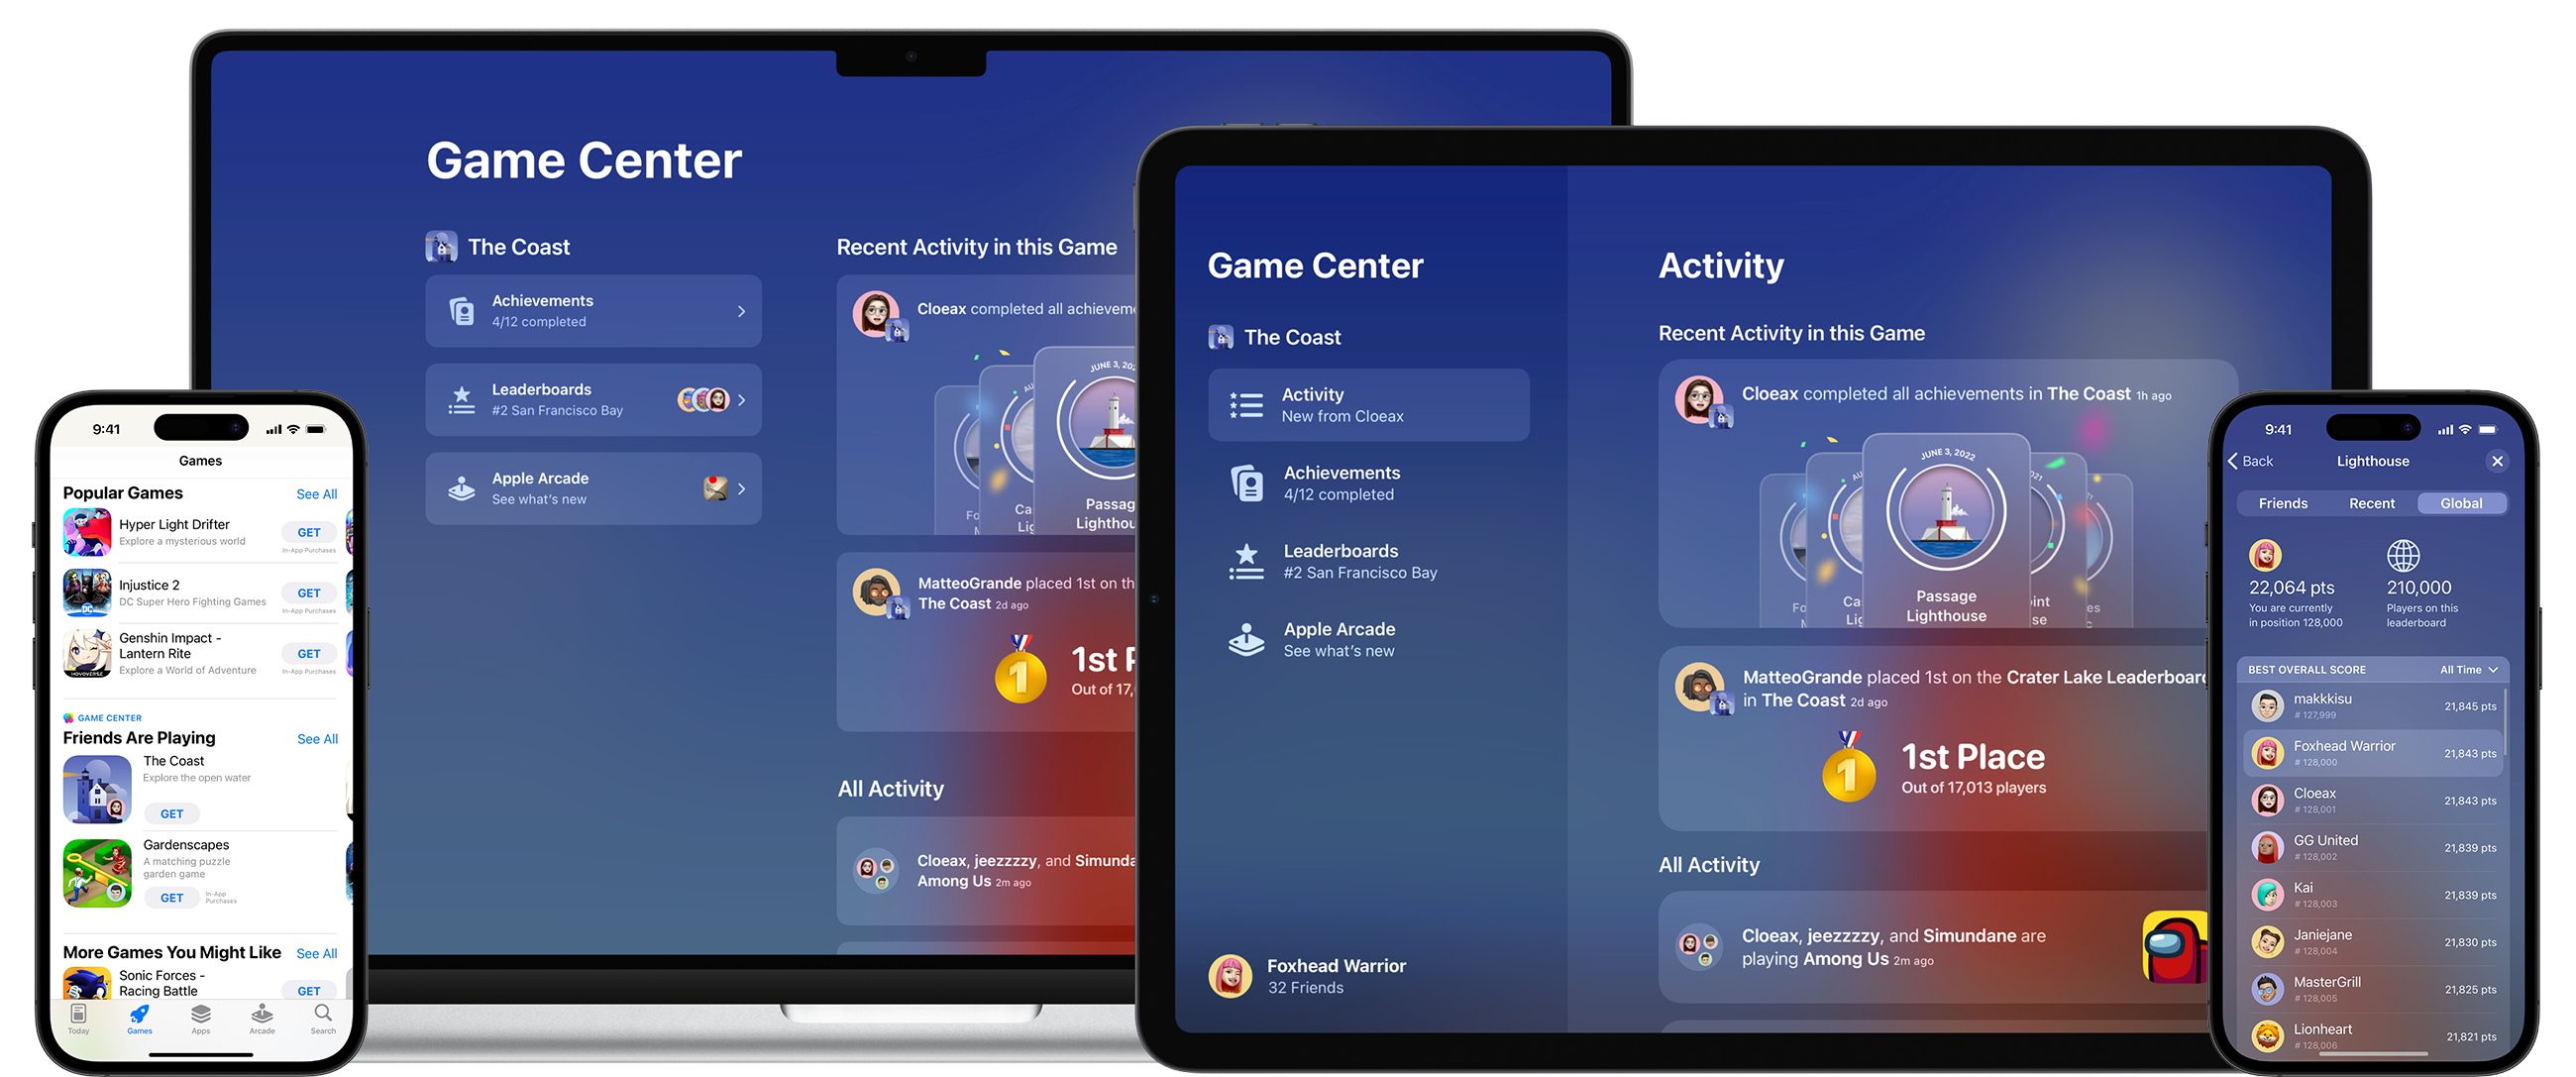 Game Centerの「アクティビティ」ページをそれぞれ表示しているMacBook、iPad、iPhoneのラインナップ。